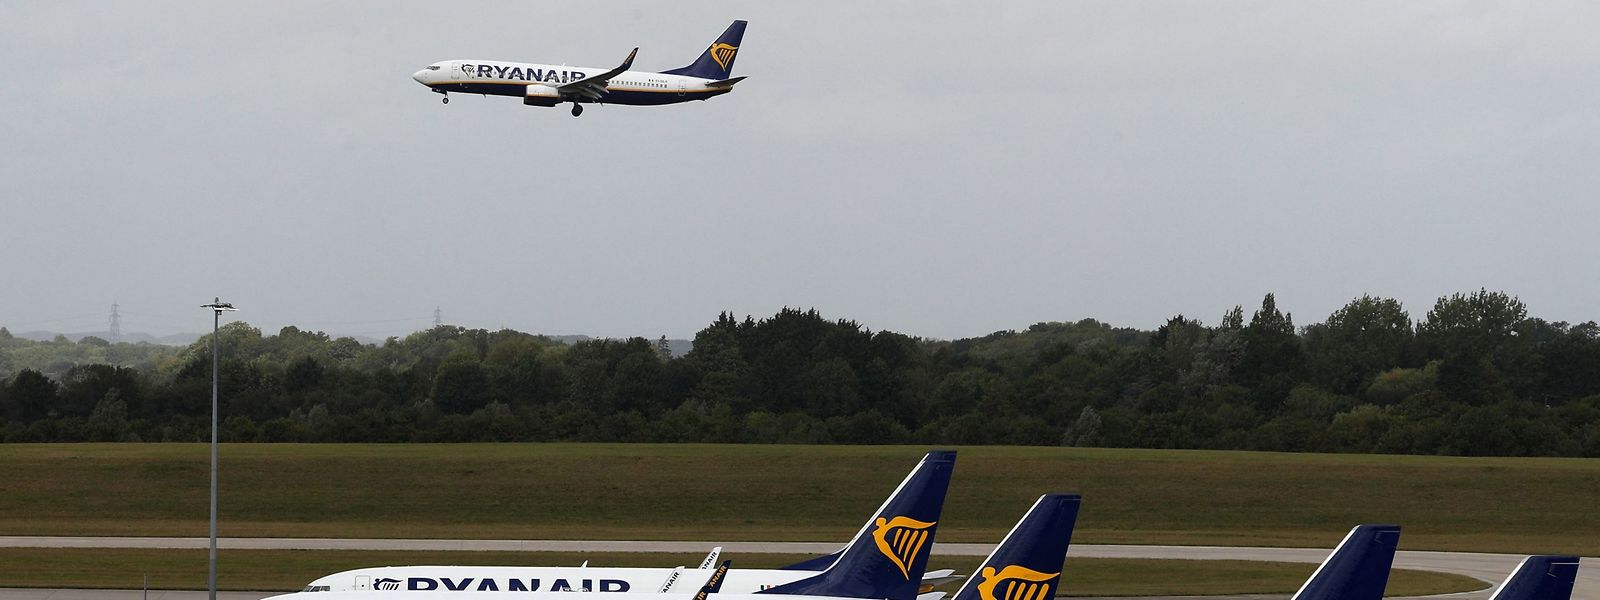 O voo do norte de Inglaterra para o sul de Portugal foi desviado para Nantes depois de uma pessoa ter sido atacada por outros passageiros.